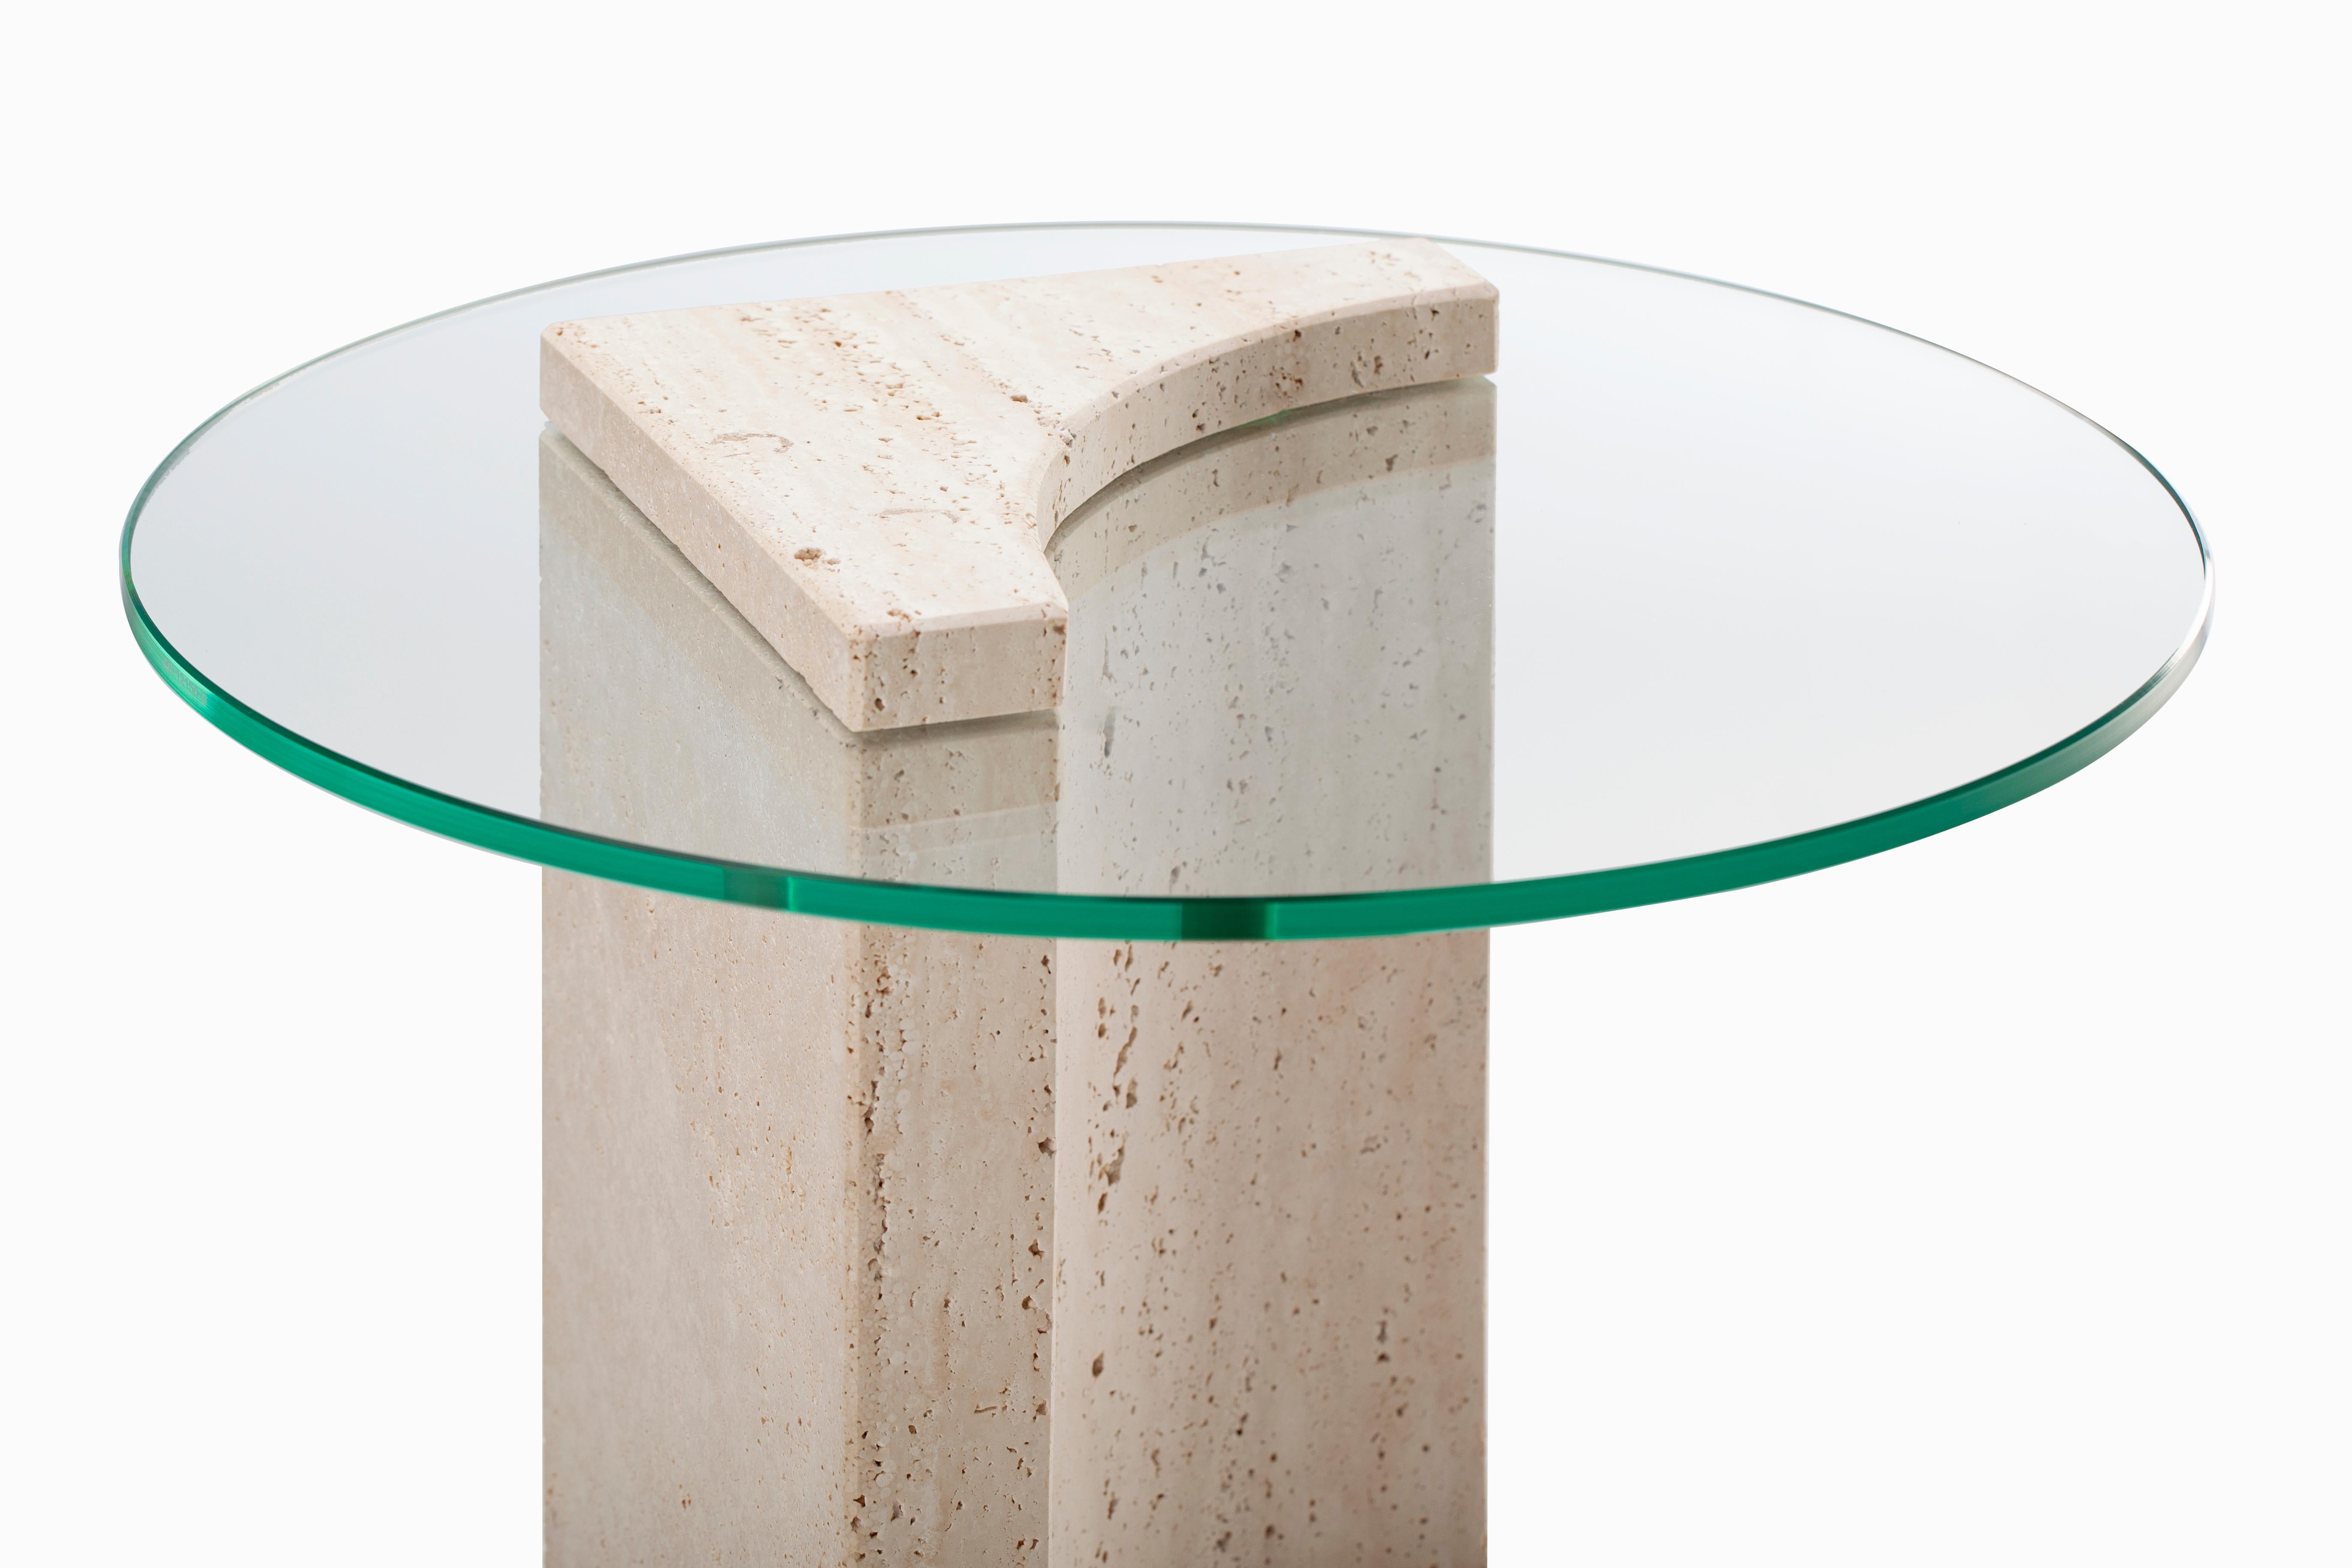 Table d'appoint avec marbre travertin fabriqué au Portugal par Collector Studio


DÉTAILS TECHNIQUES
DIMENSIONS :
Ø 50 cm  19,7